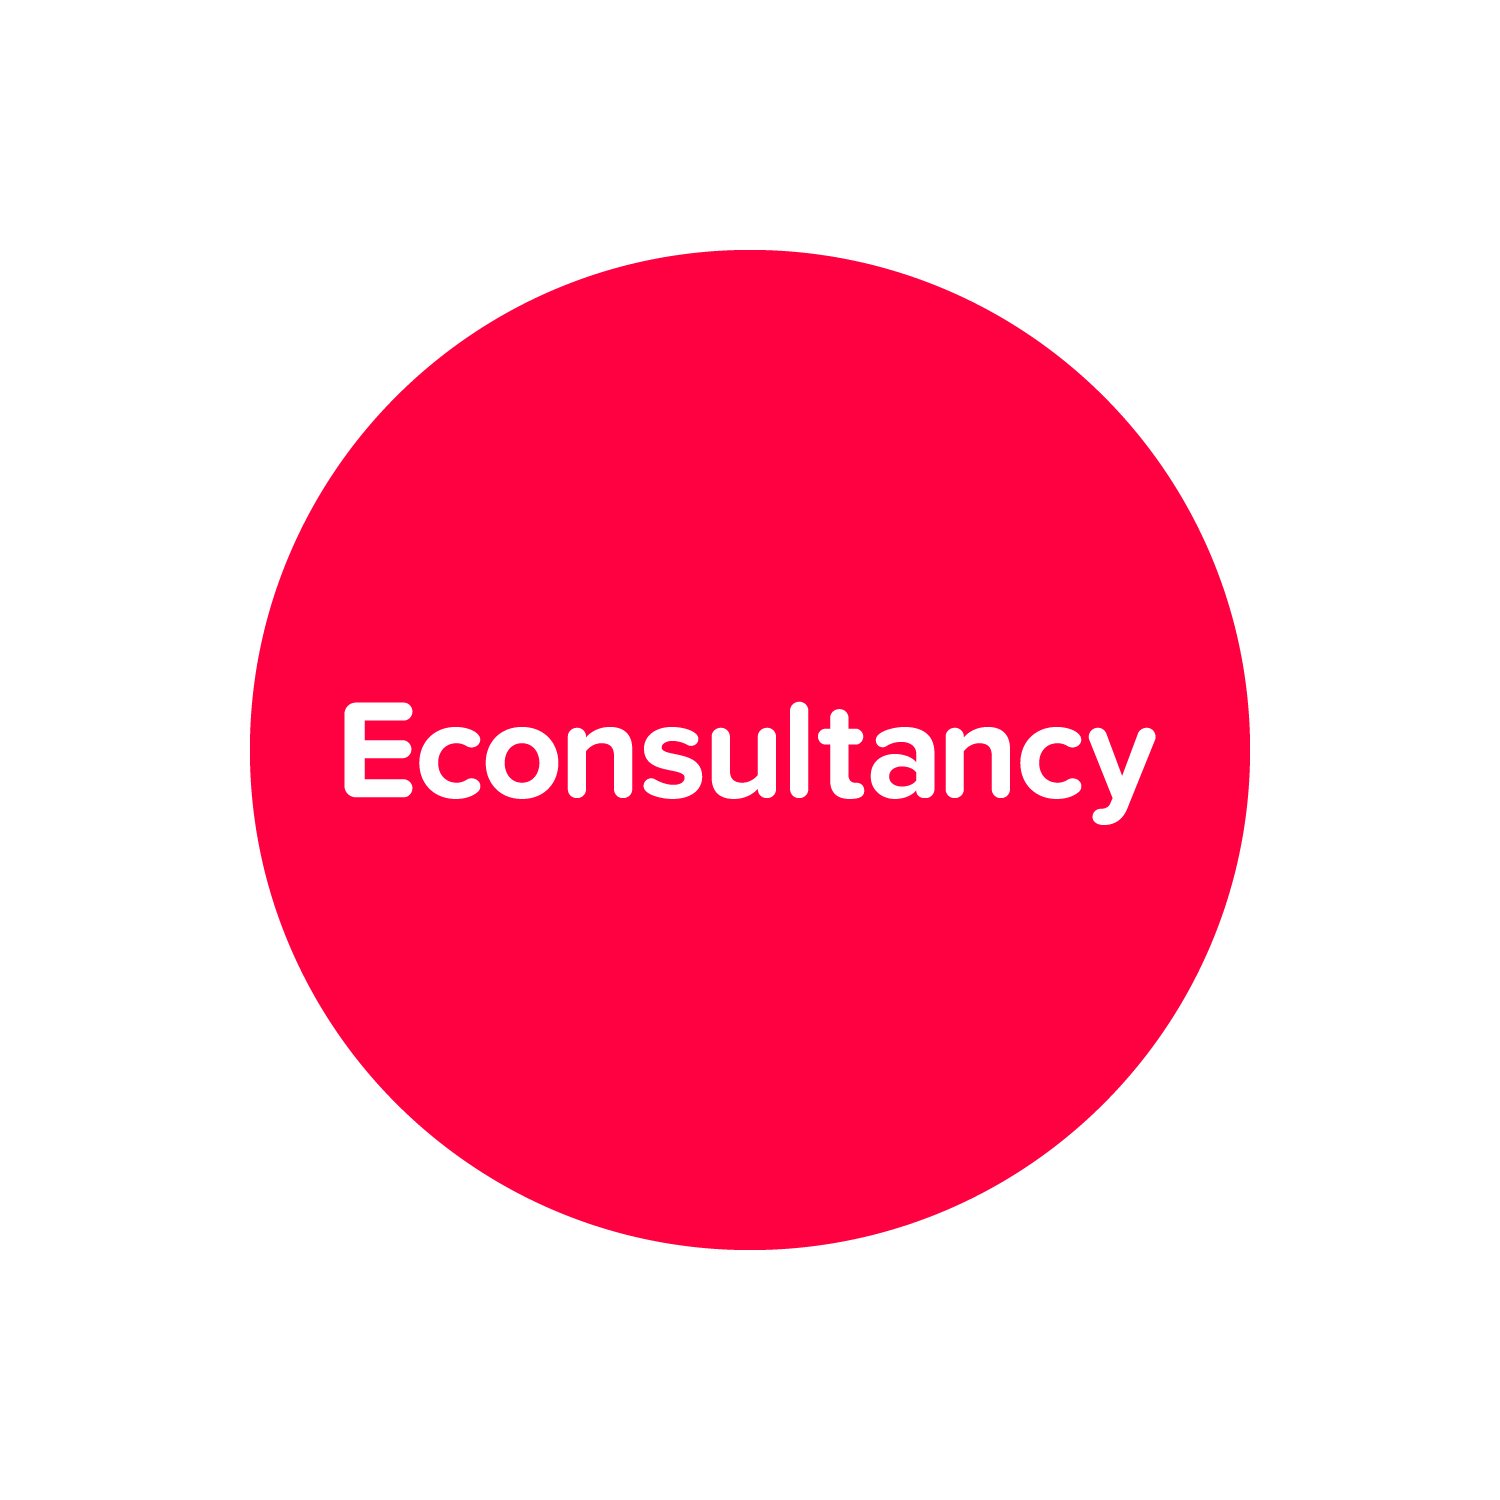 Econsultancy